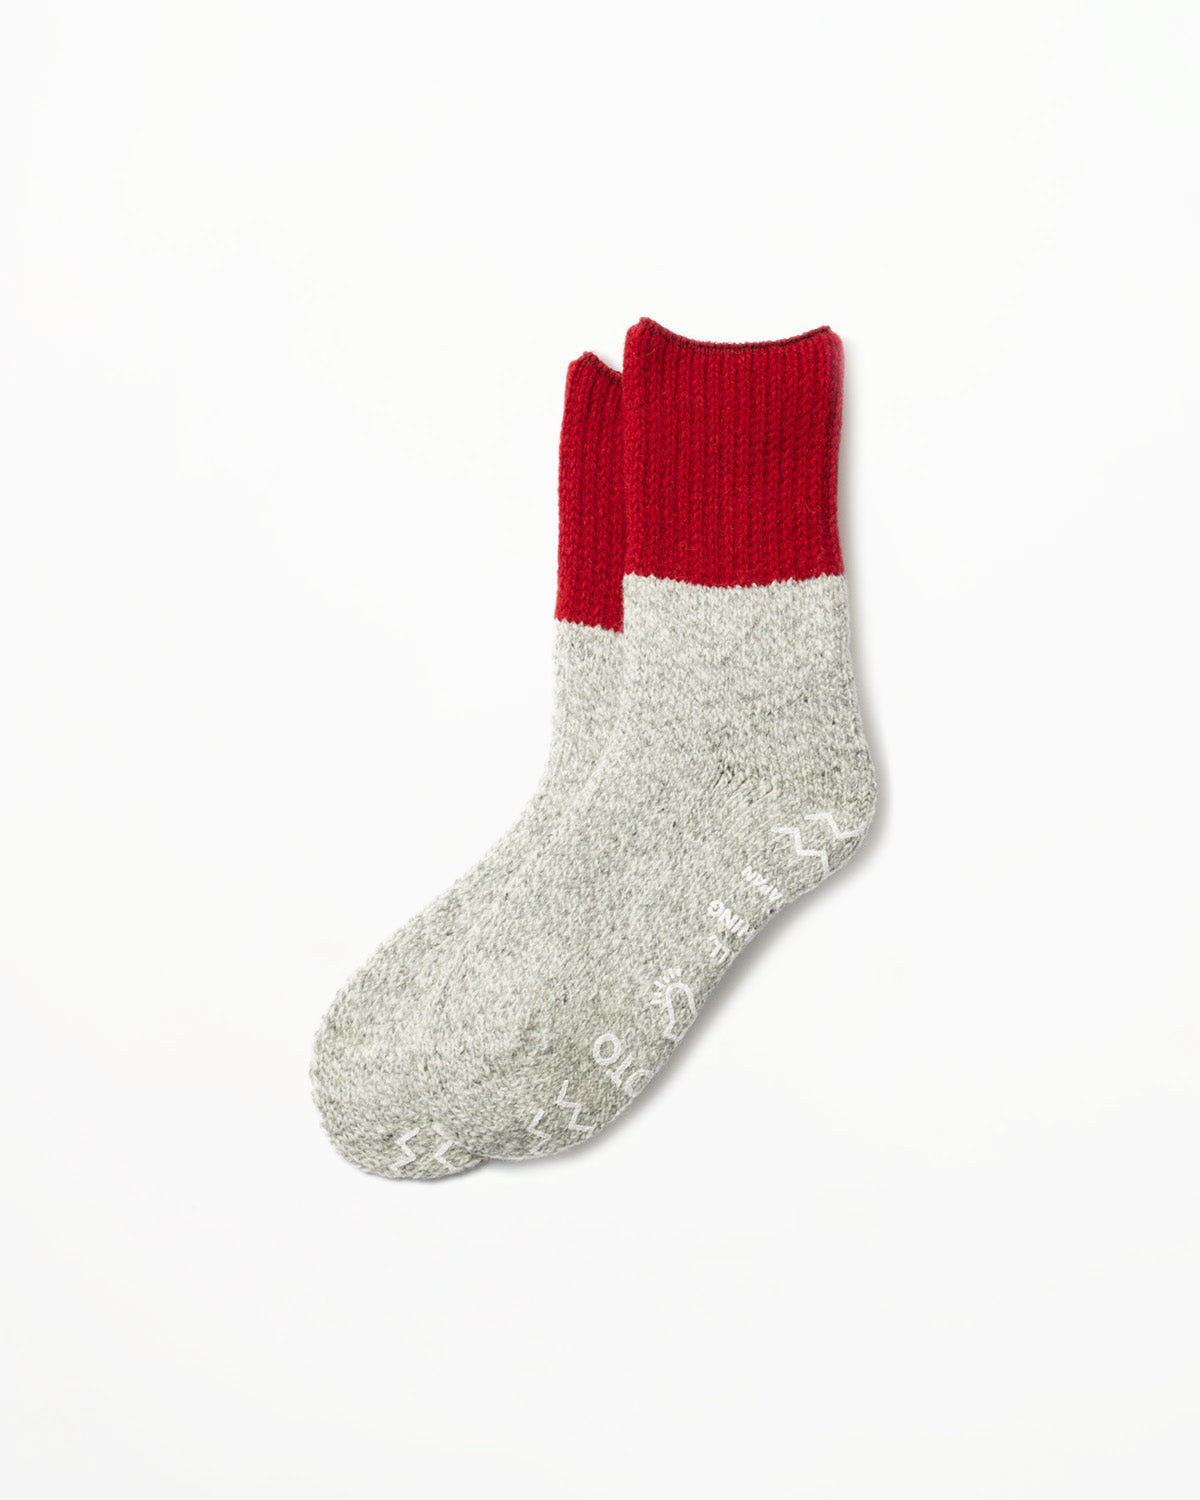 R1435 - Retro Winter Room Socks - Red, Gray